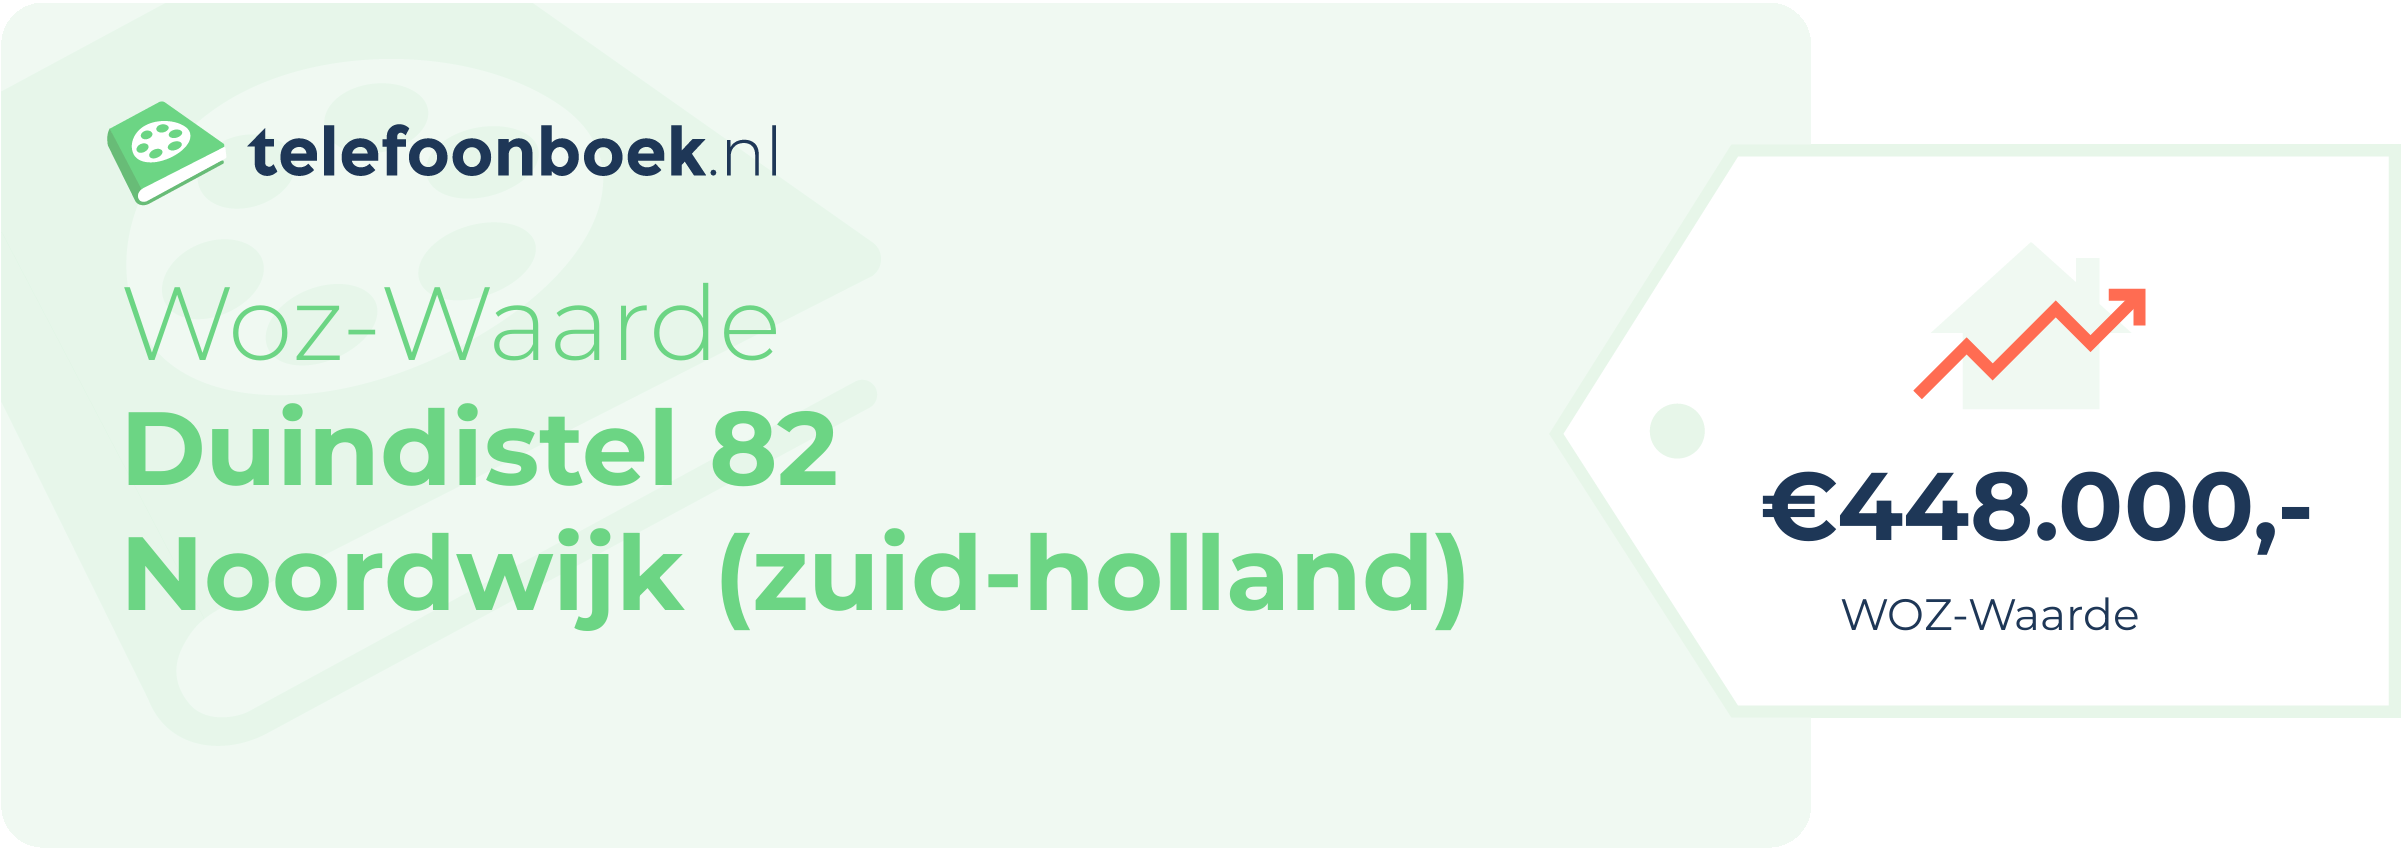 WOZ-waarde Duindistel 82 Noordwijk (Zuid-Holland)